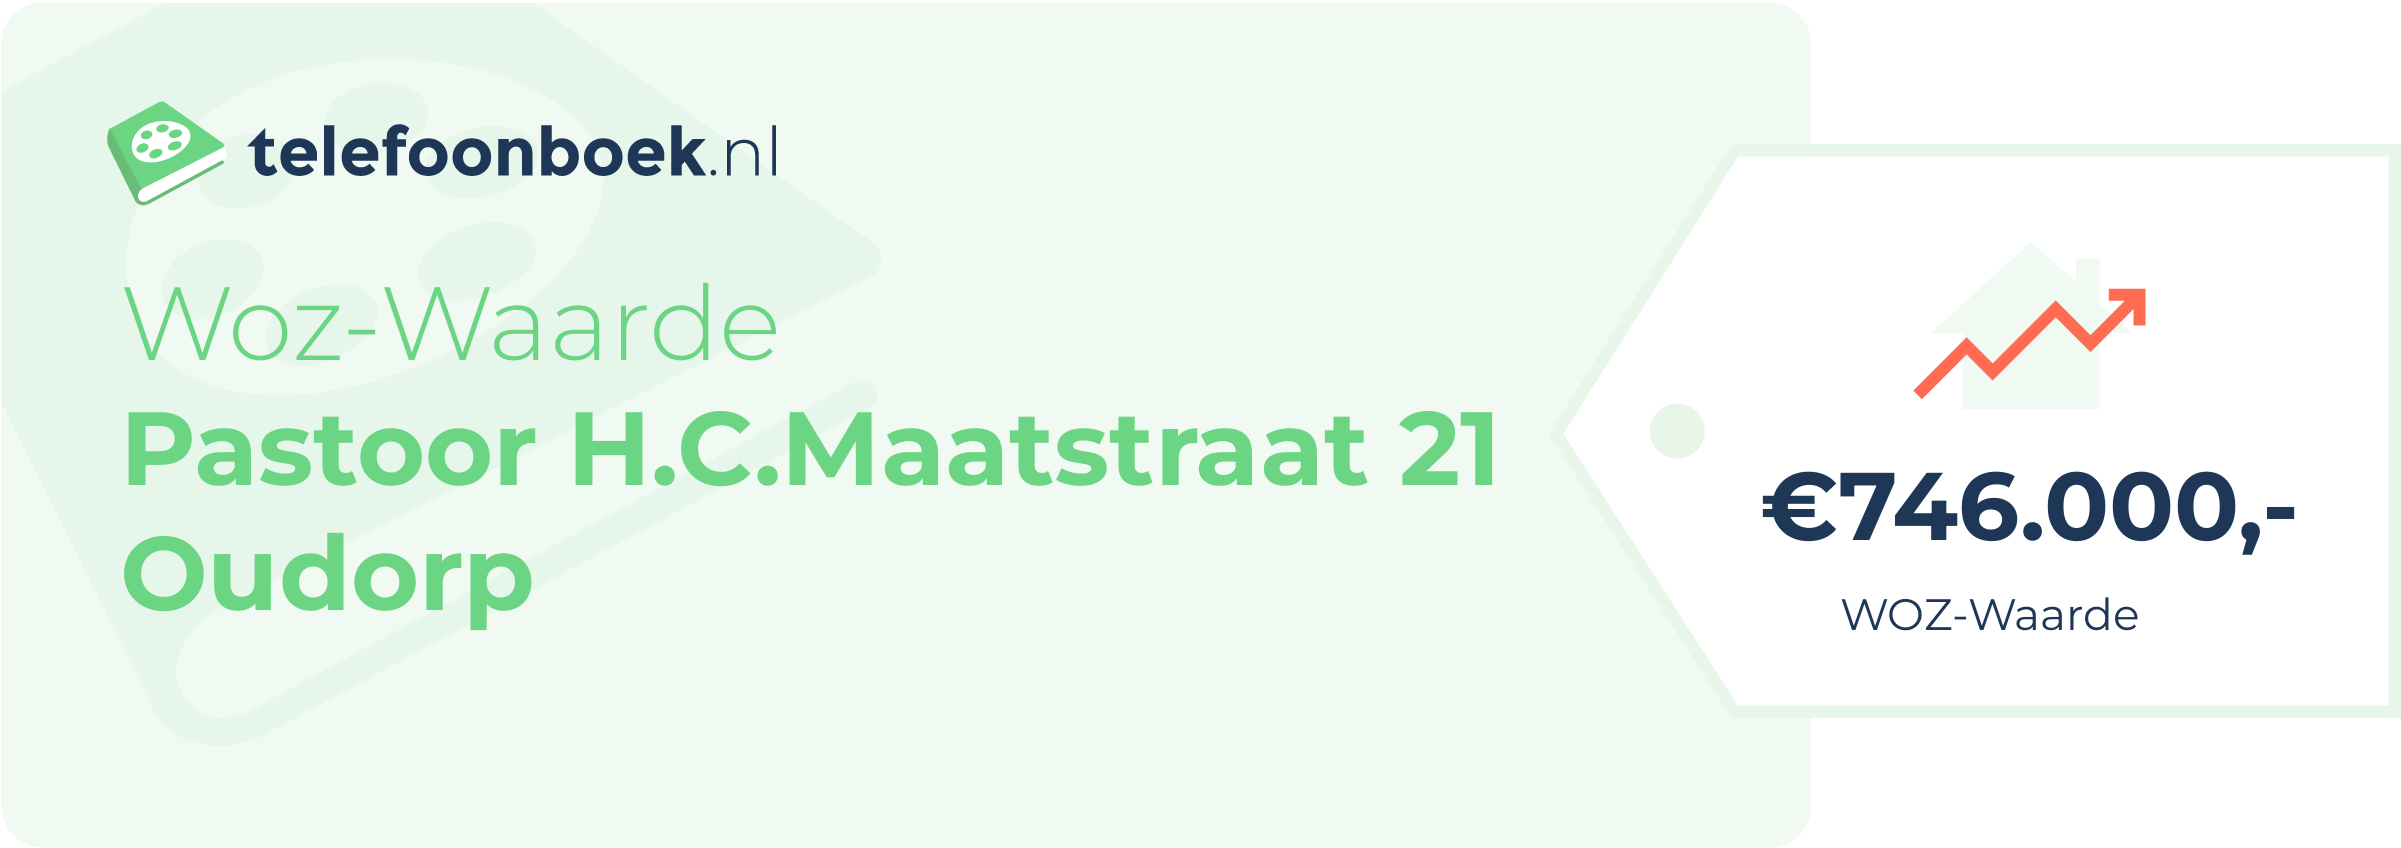 WOZ-waarde Pastoor H.C.Maatstraat 21 Oudorp